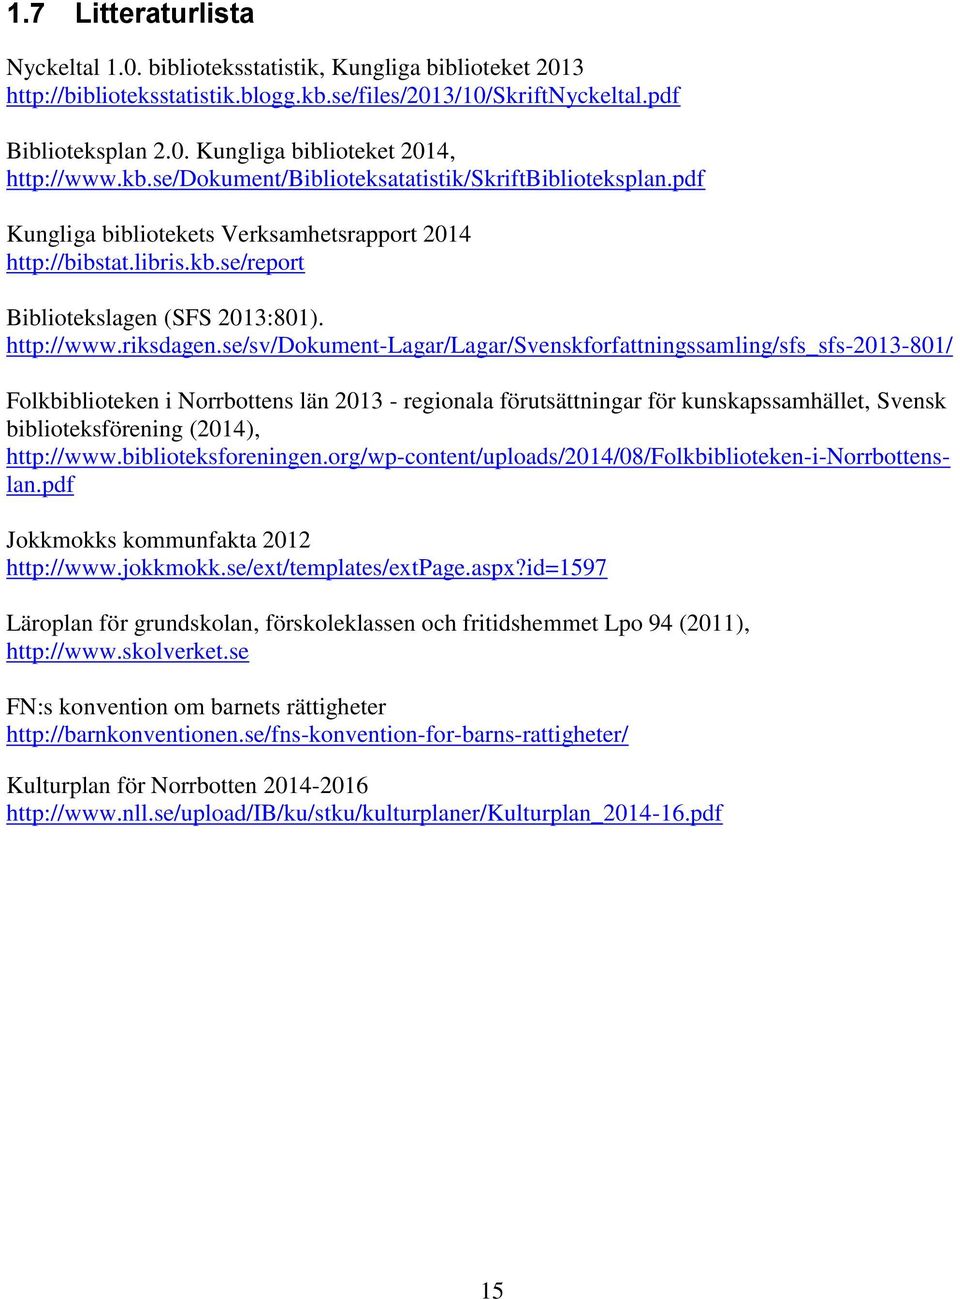 se/sv/dokument-lagar/lagar/svenskforfattningssamling/sfs_sfs-2013-801/ Folkbiblioteken i Norrbottens län 2013 - regionala förutsättningar för kunskapssamhället, Svensk biblioteksförening (2014),